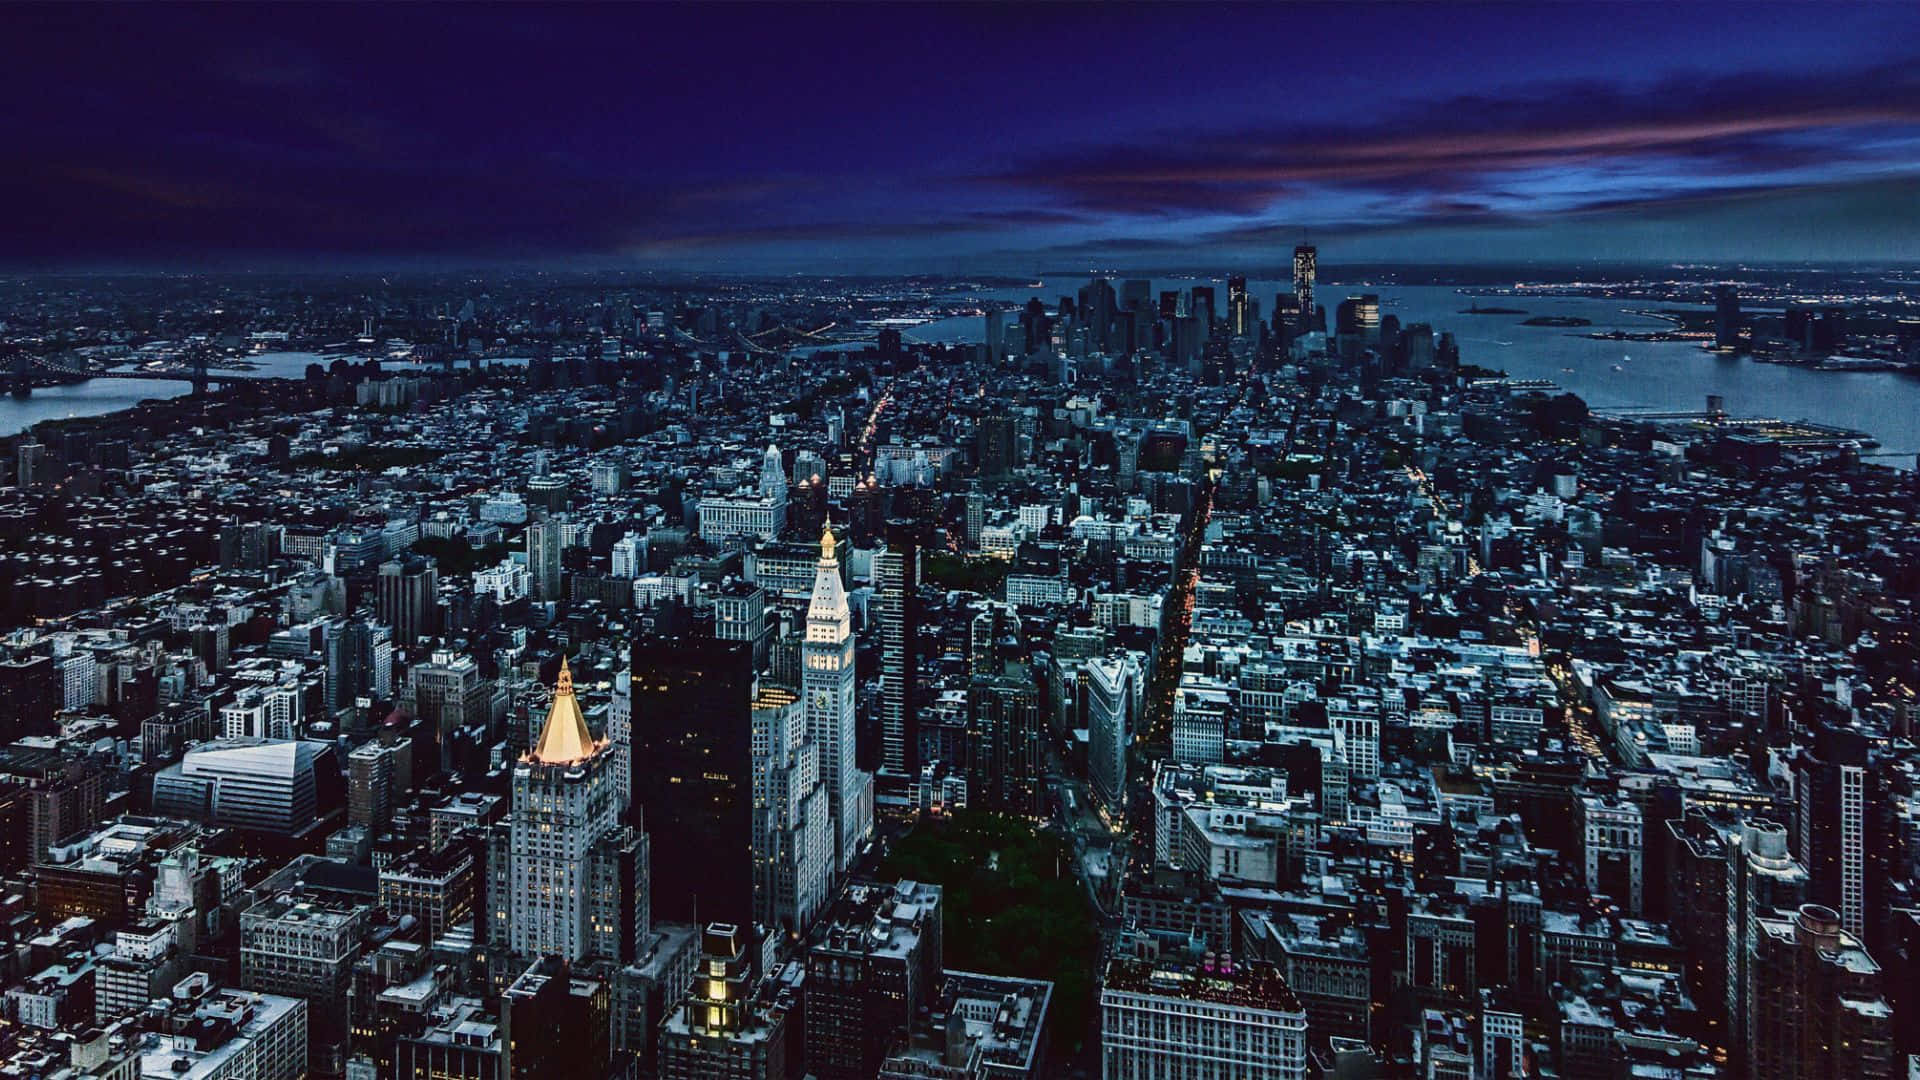 Imagende La Ciudad De Nueva York De Noche Con Cielo Morado.